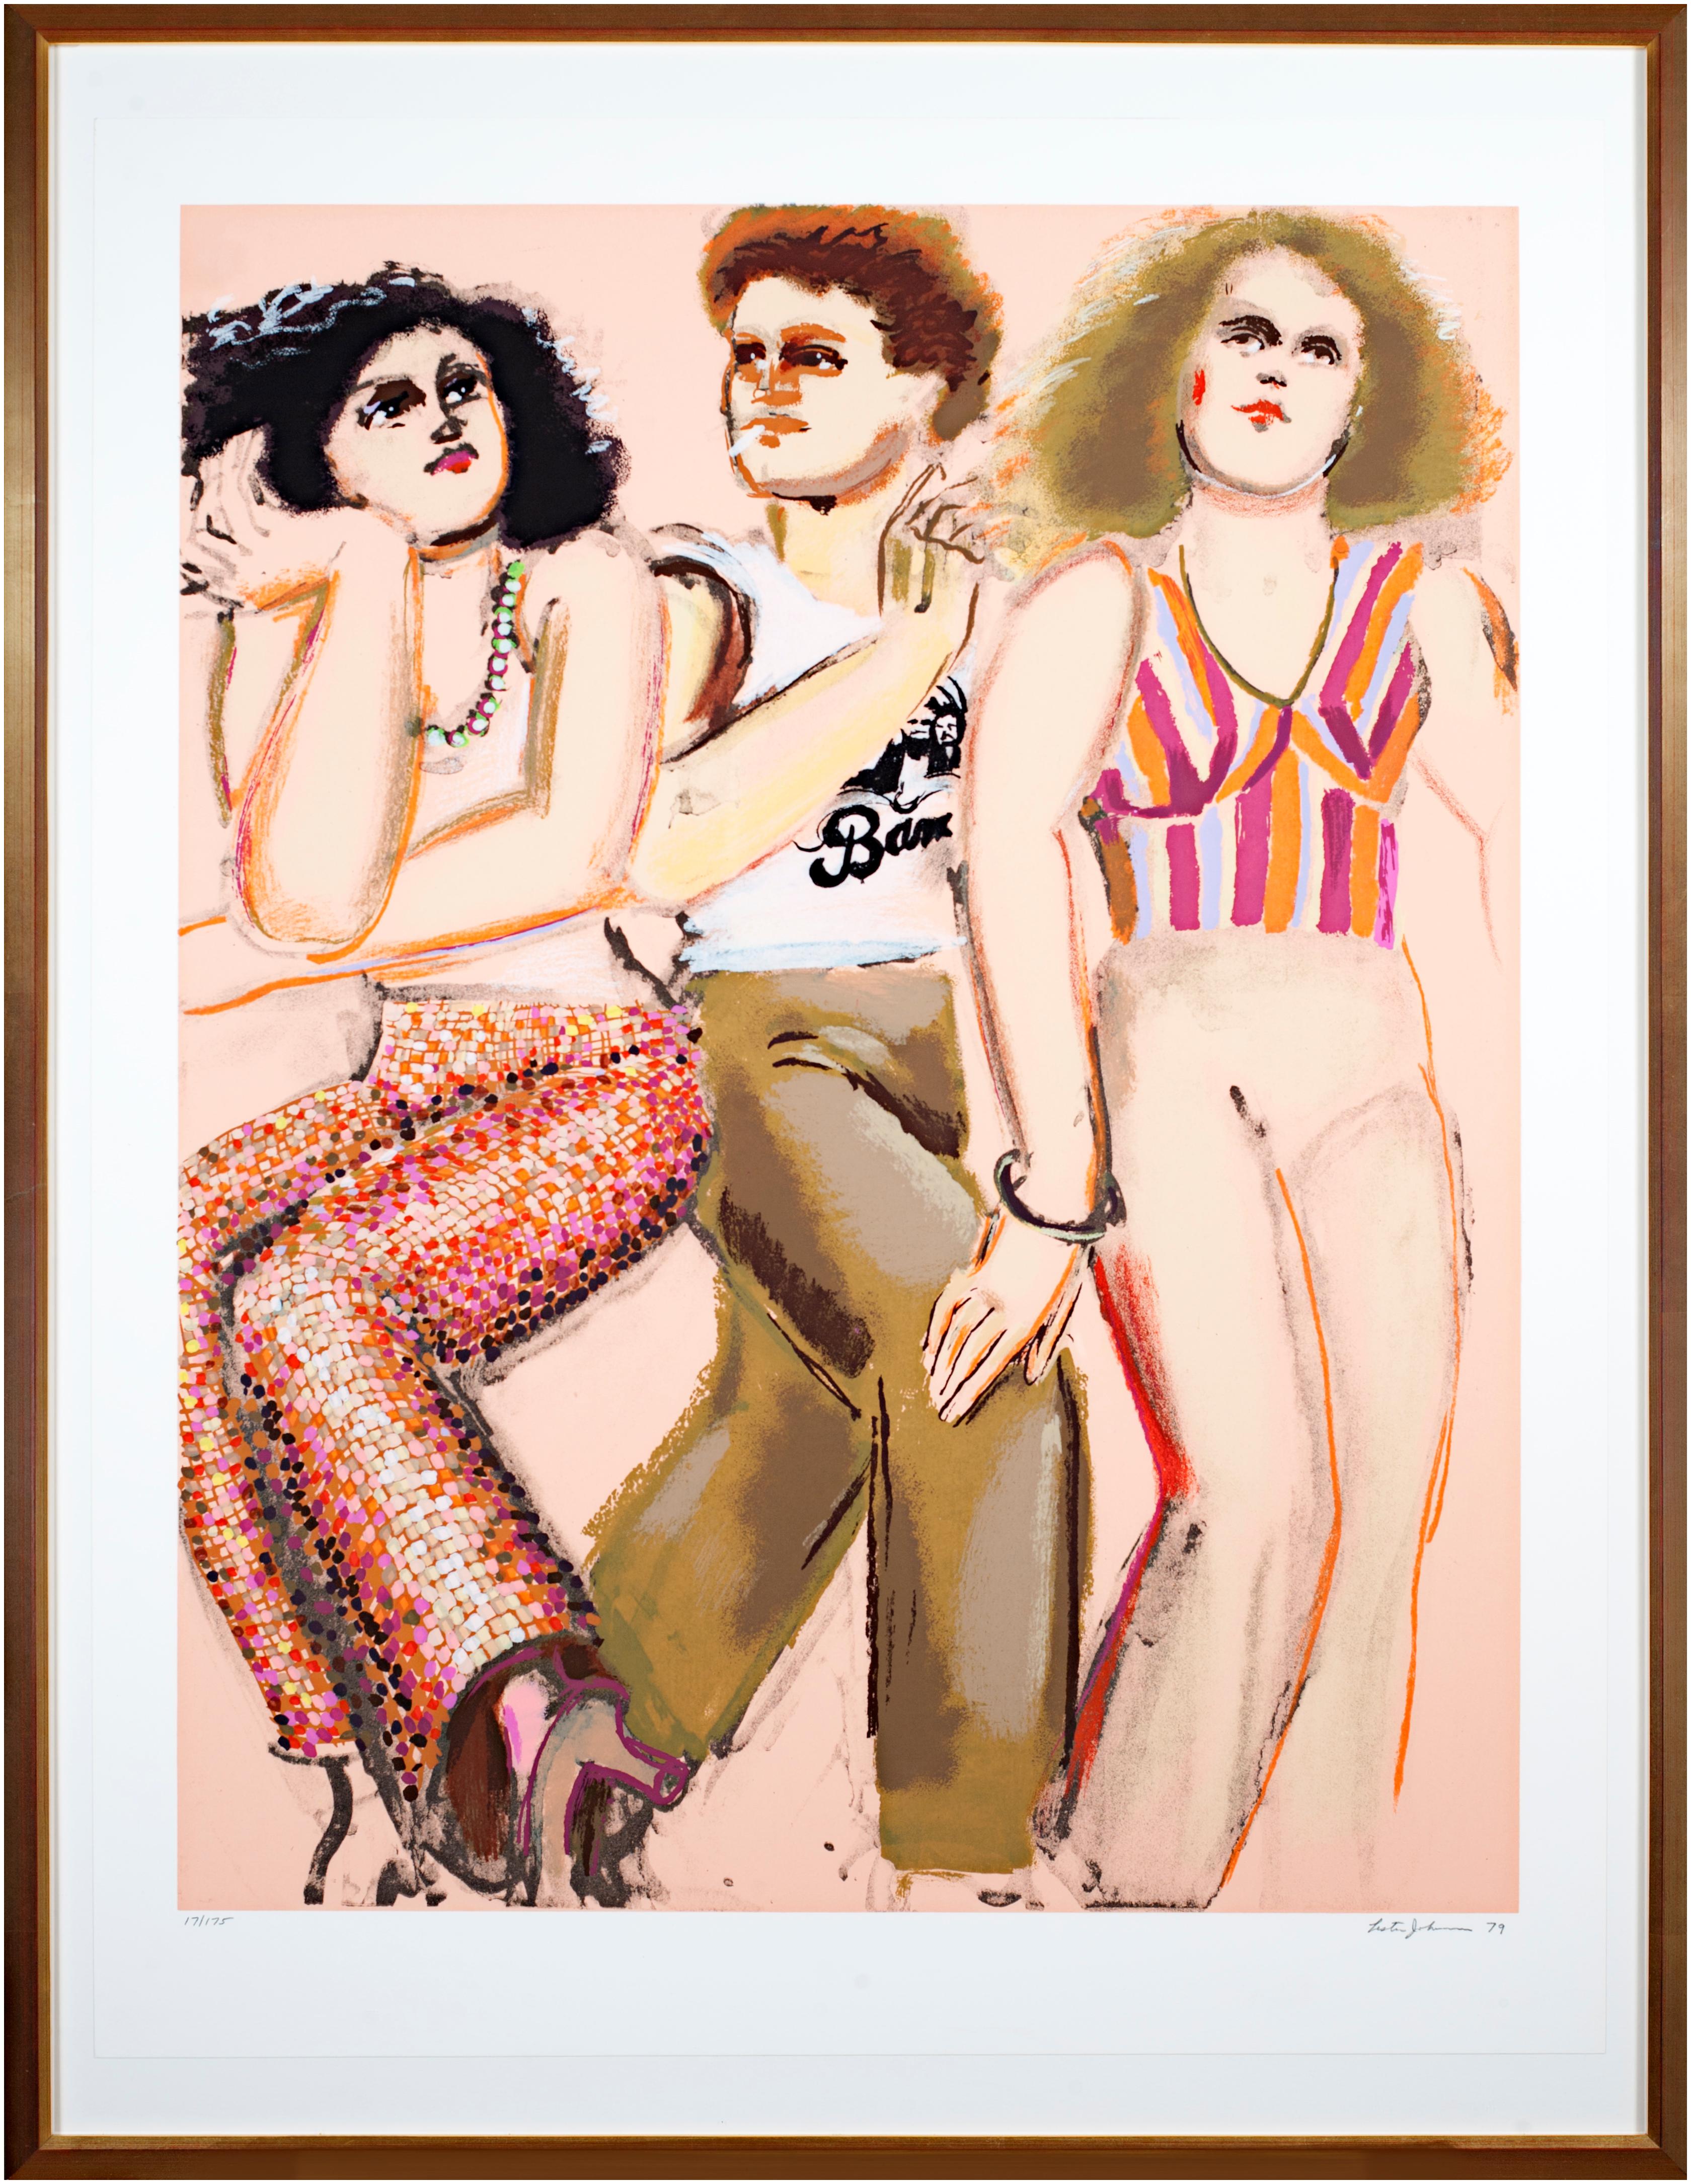 La présente œuvre est une sérigraphie originale signée par Lester Johnson, issue de son "Street Scene Portfolio" Elle représente trois personnages, tous portant des vêtements de rue à la mode, emblématiques de la culture et de la vie des jeunes.